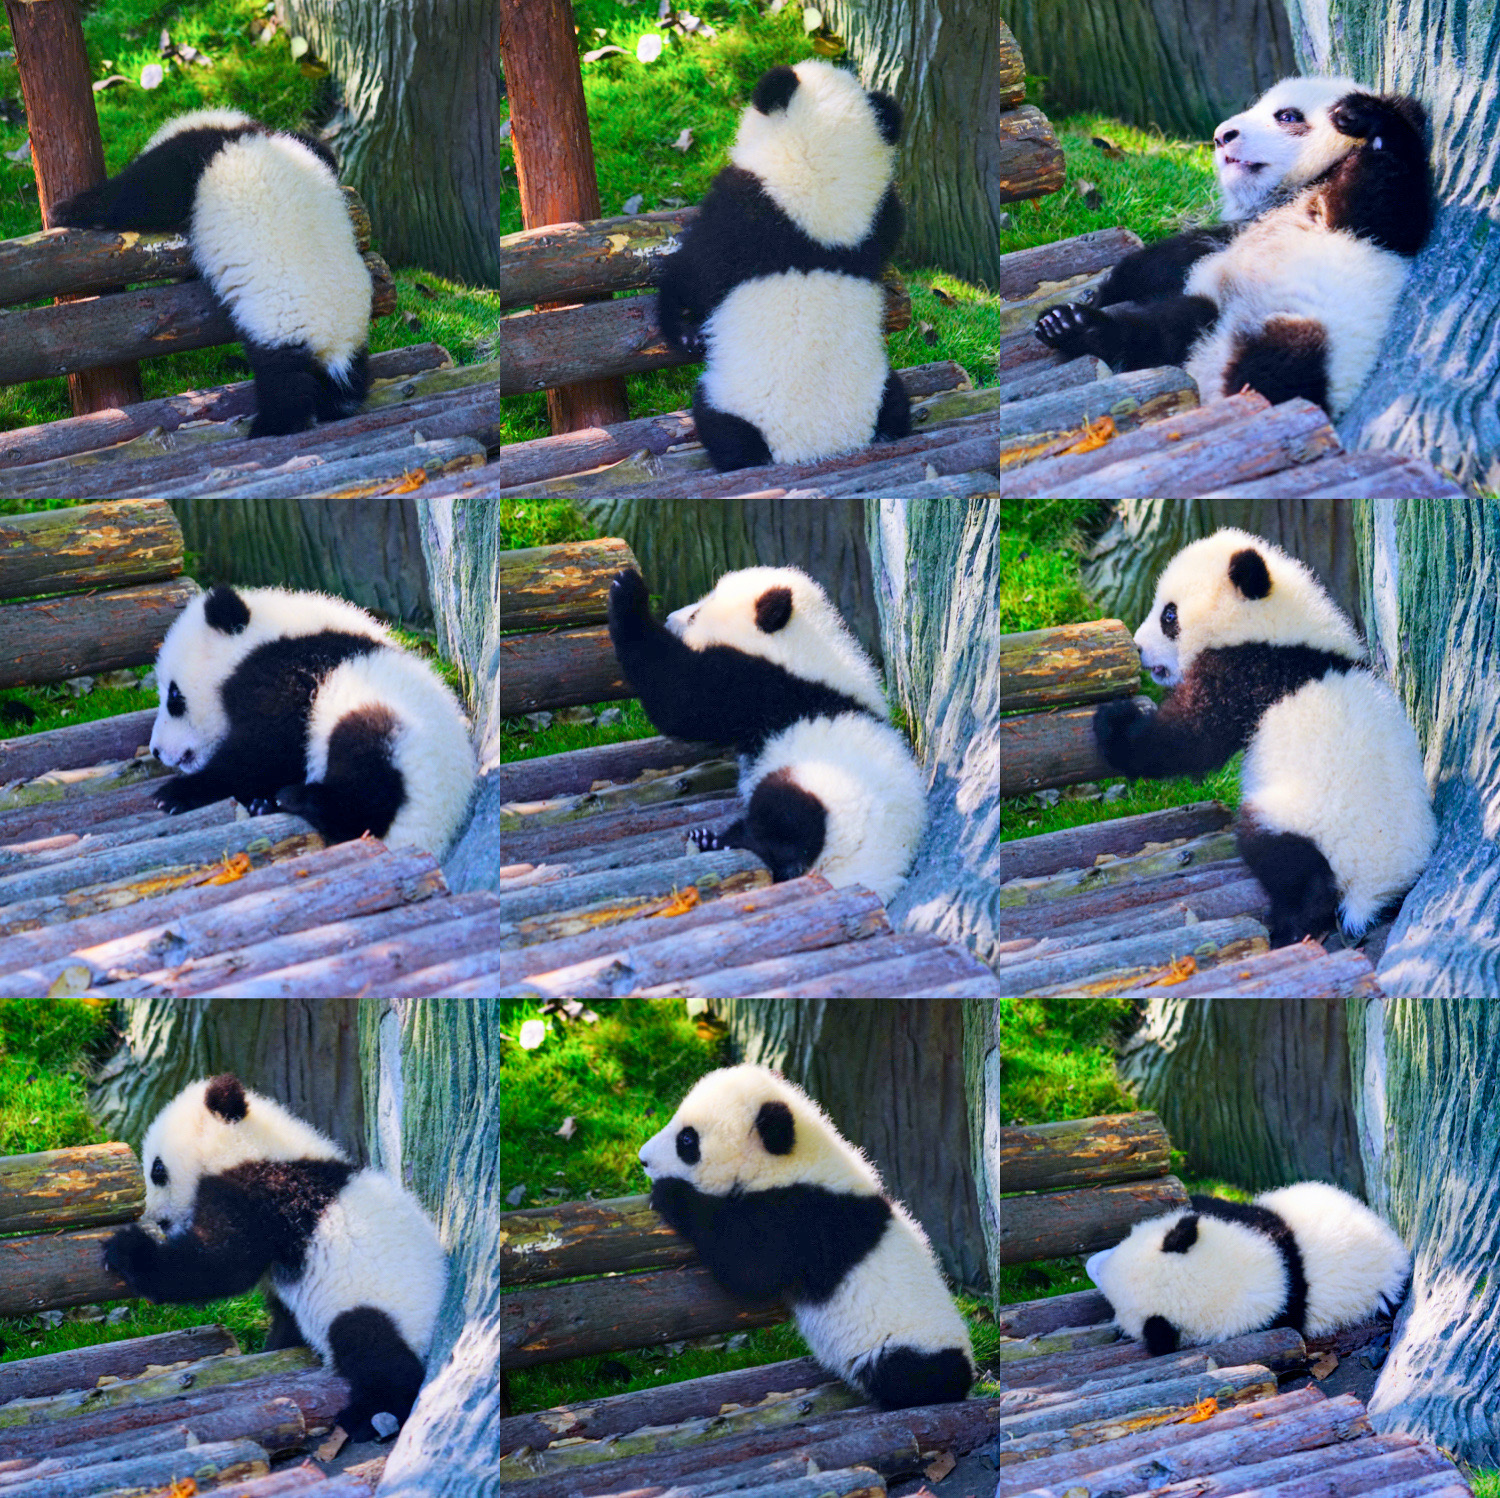 成都 | 我认为它就是全世界最可爱的国宝，熊猫基地攻略  【坐标】 成都熊猫培育基地  【交通】 位